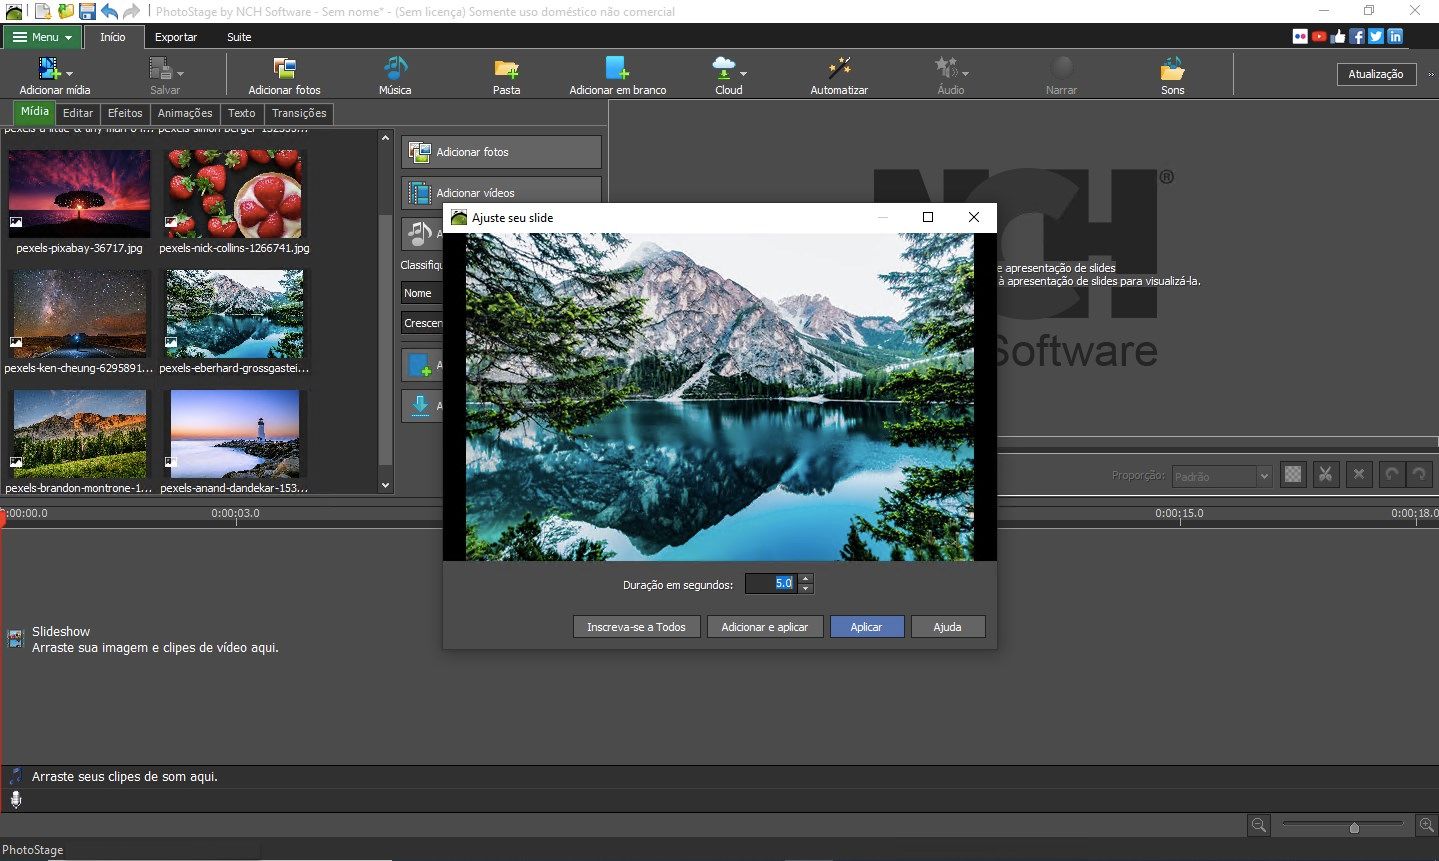 PhotoStage Software de Apresentação de Slides